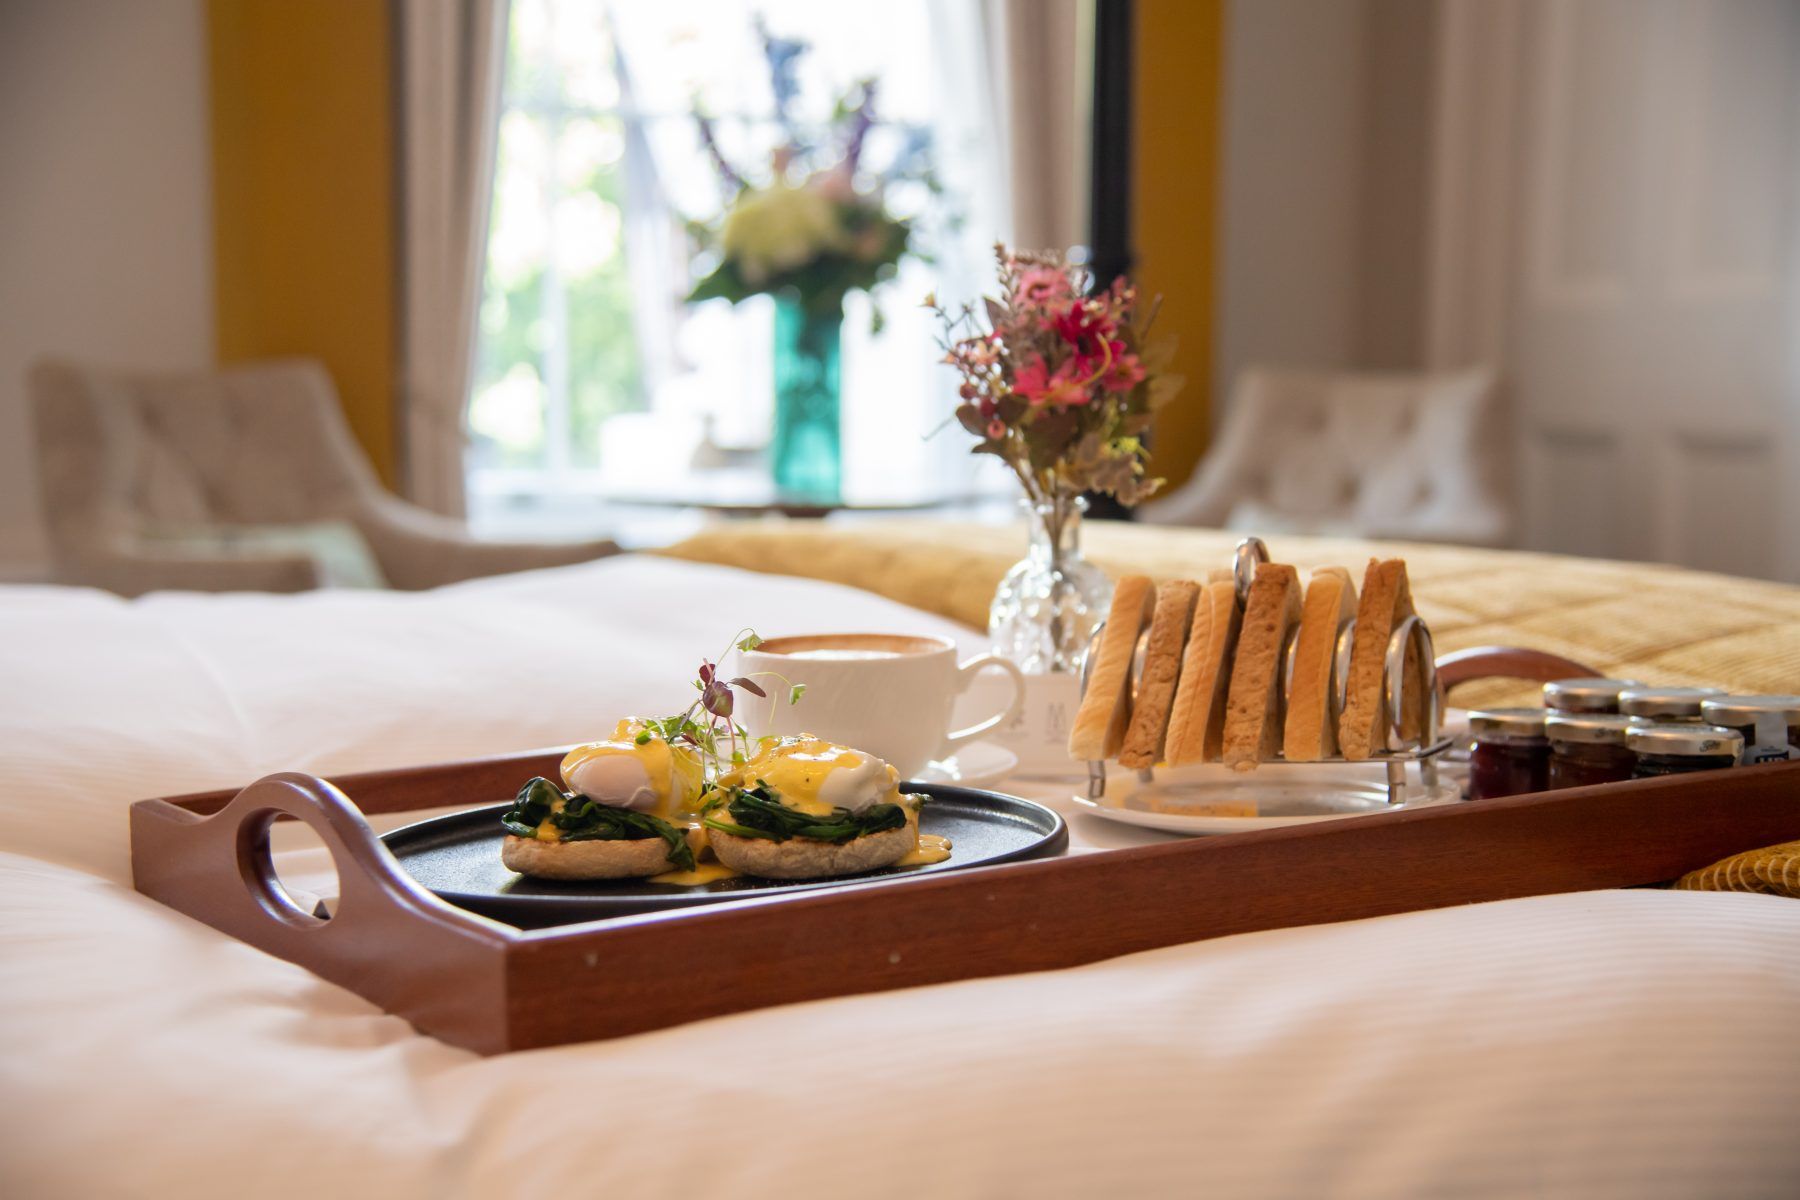 Queens Hotel breakfast in bed